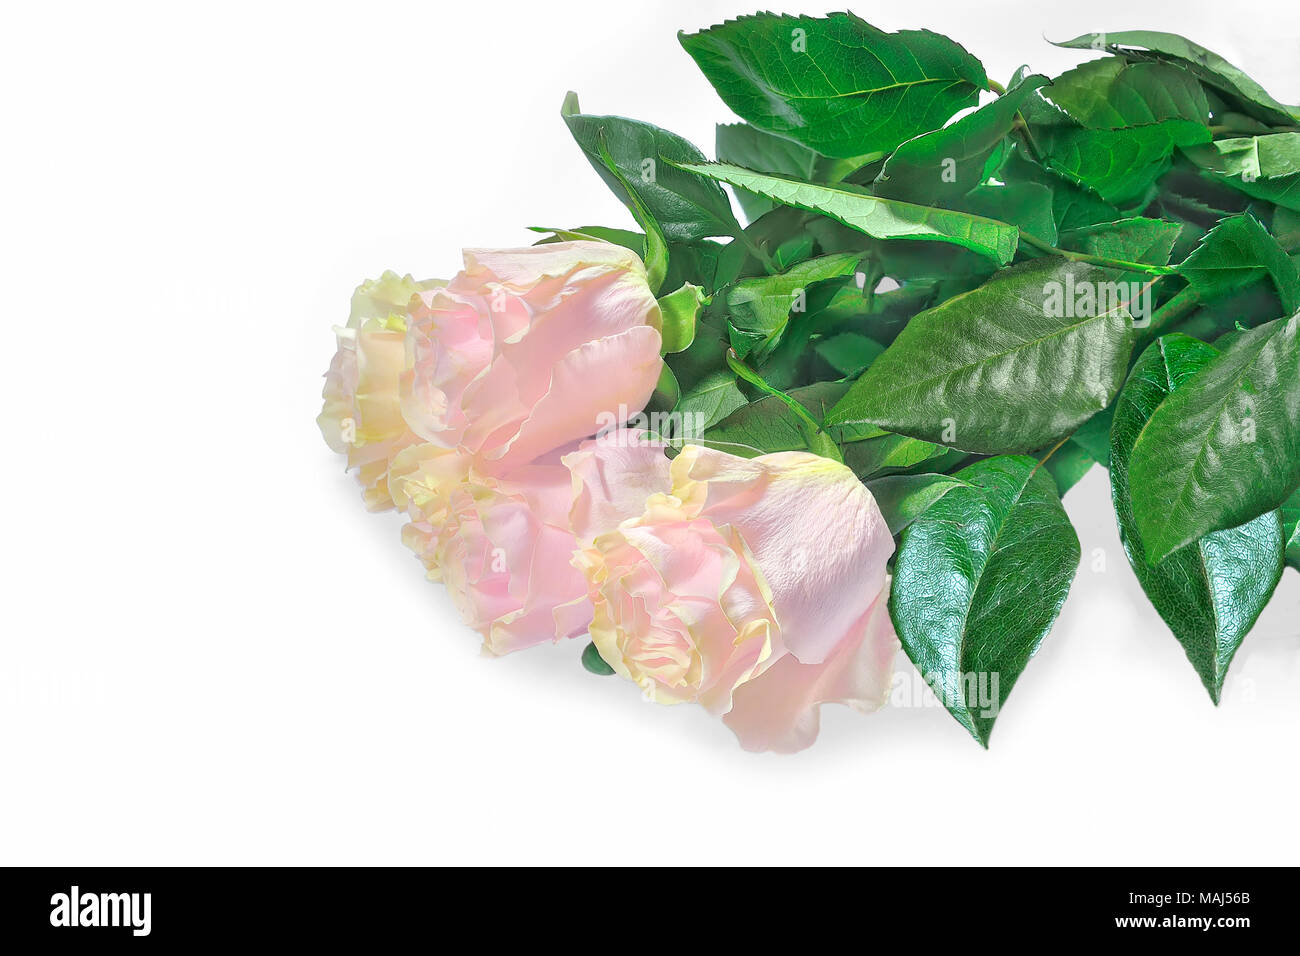 Magnifique bouquet de roses rose pâle, délicat avec la teinte jaune et vert feuilles isolées sur fond blanc - floral festif Banque D'Images